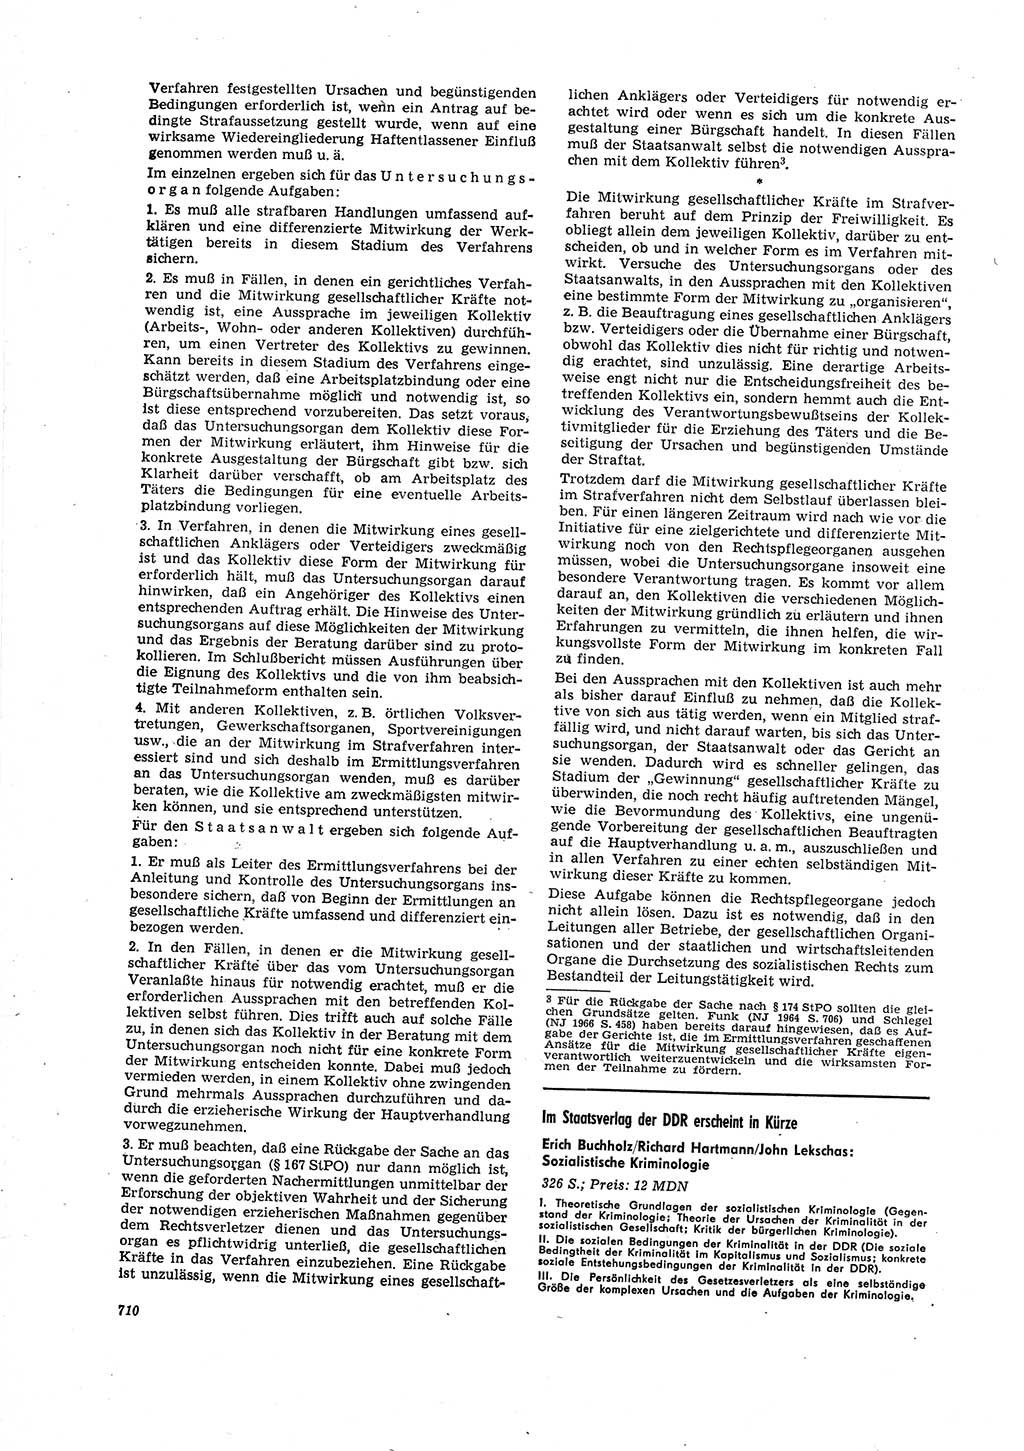 Neue Justiz (NJ), Zeitschrift für Recht und Rechtswissenschaft [Deutsche Demokratische Republik (DDR)], 20. Jahrgang 1966, Seite 710 (NJ DDR 1966, S. 710)